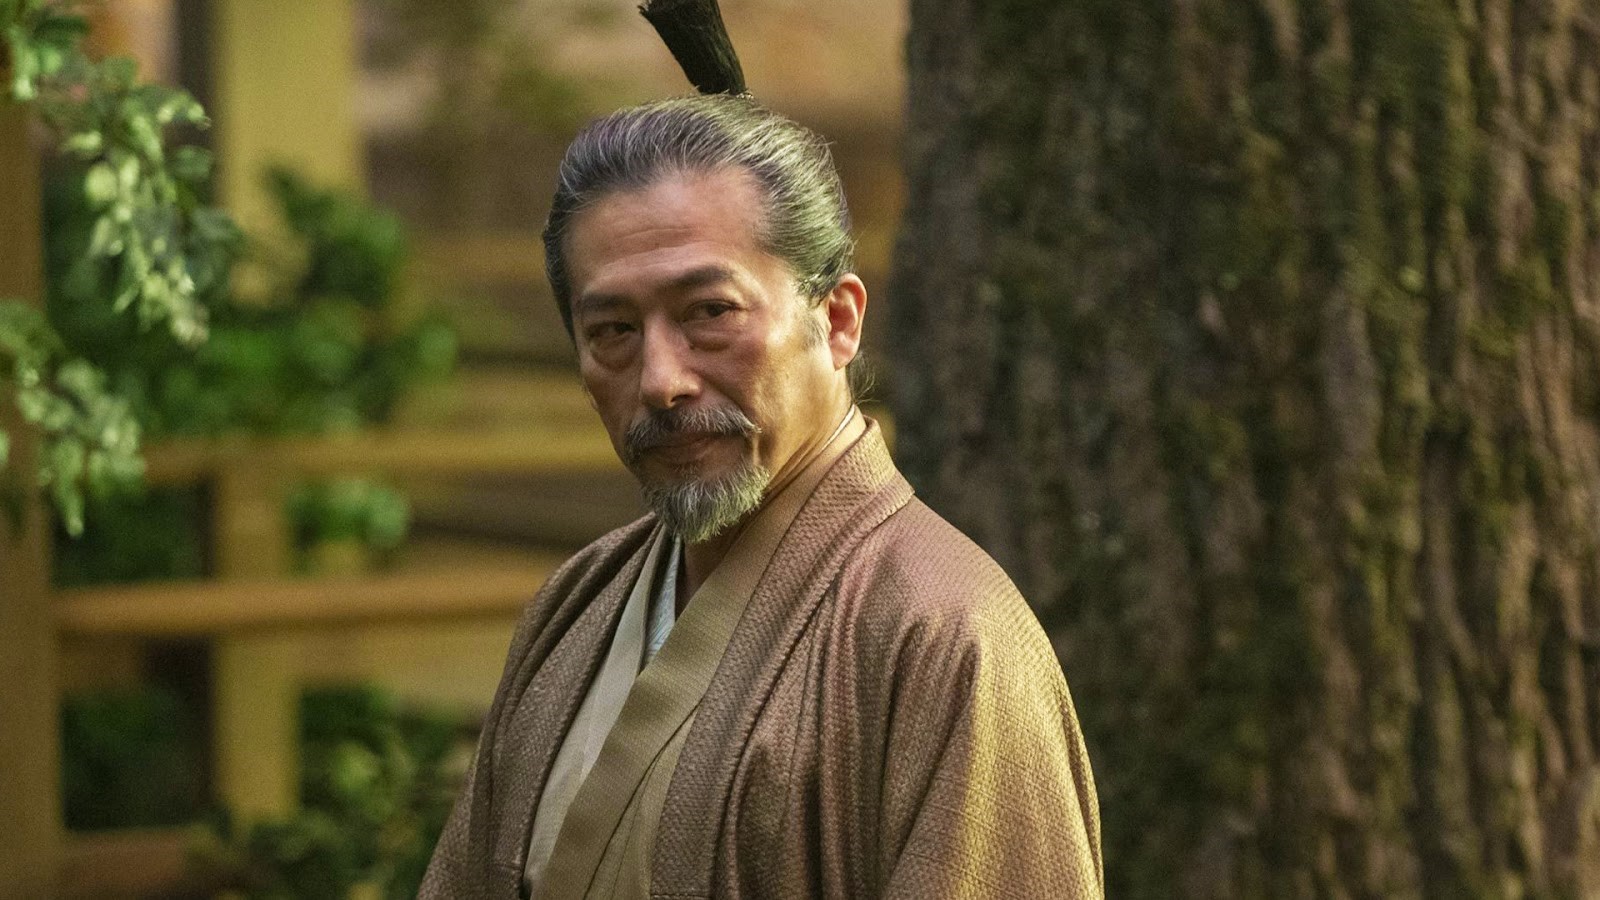 shogun season 2 release date